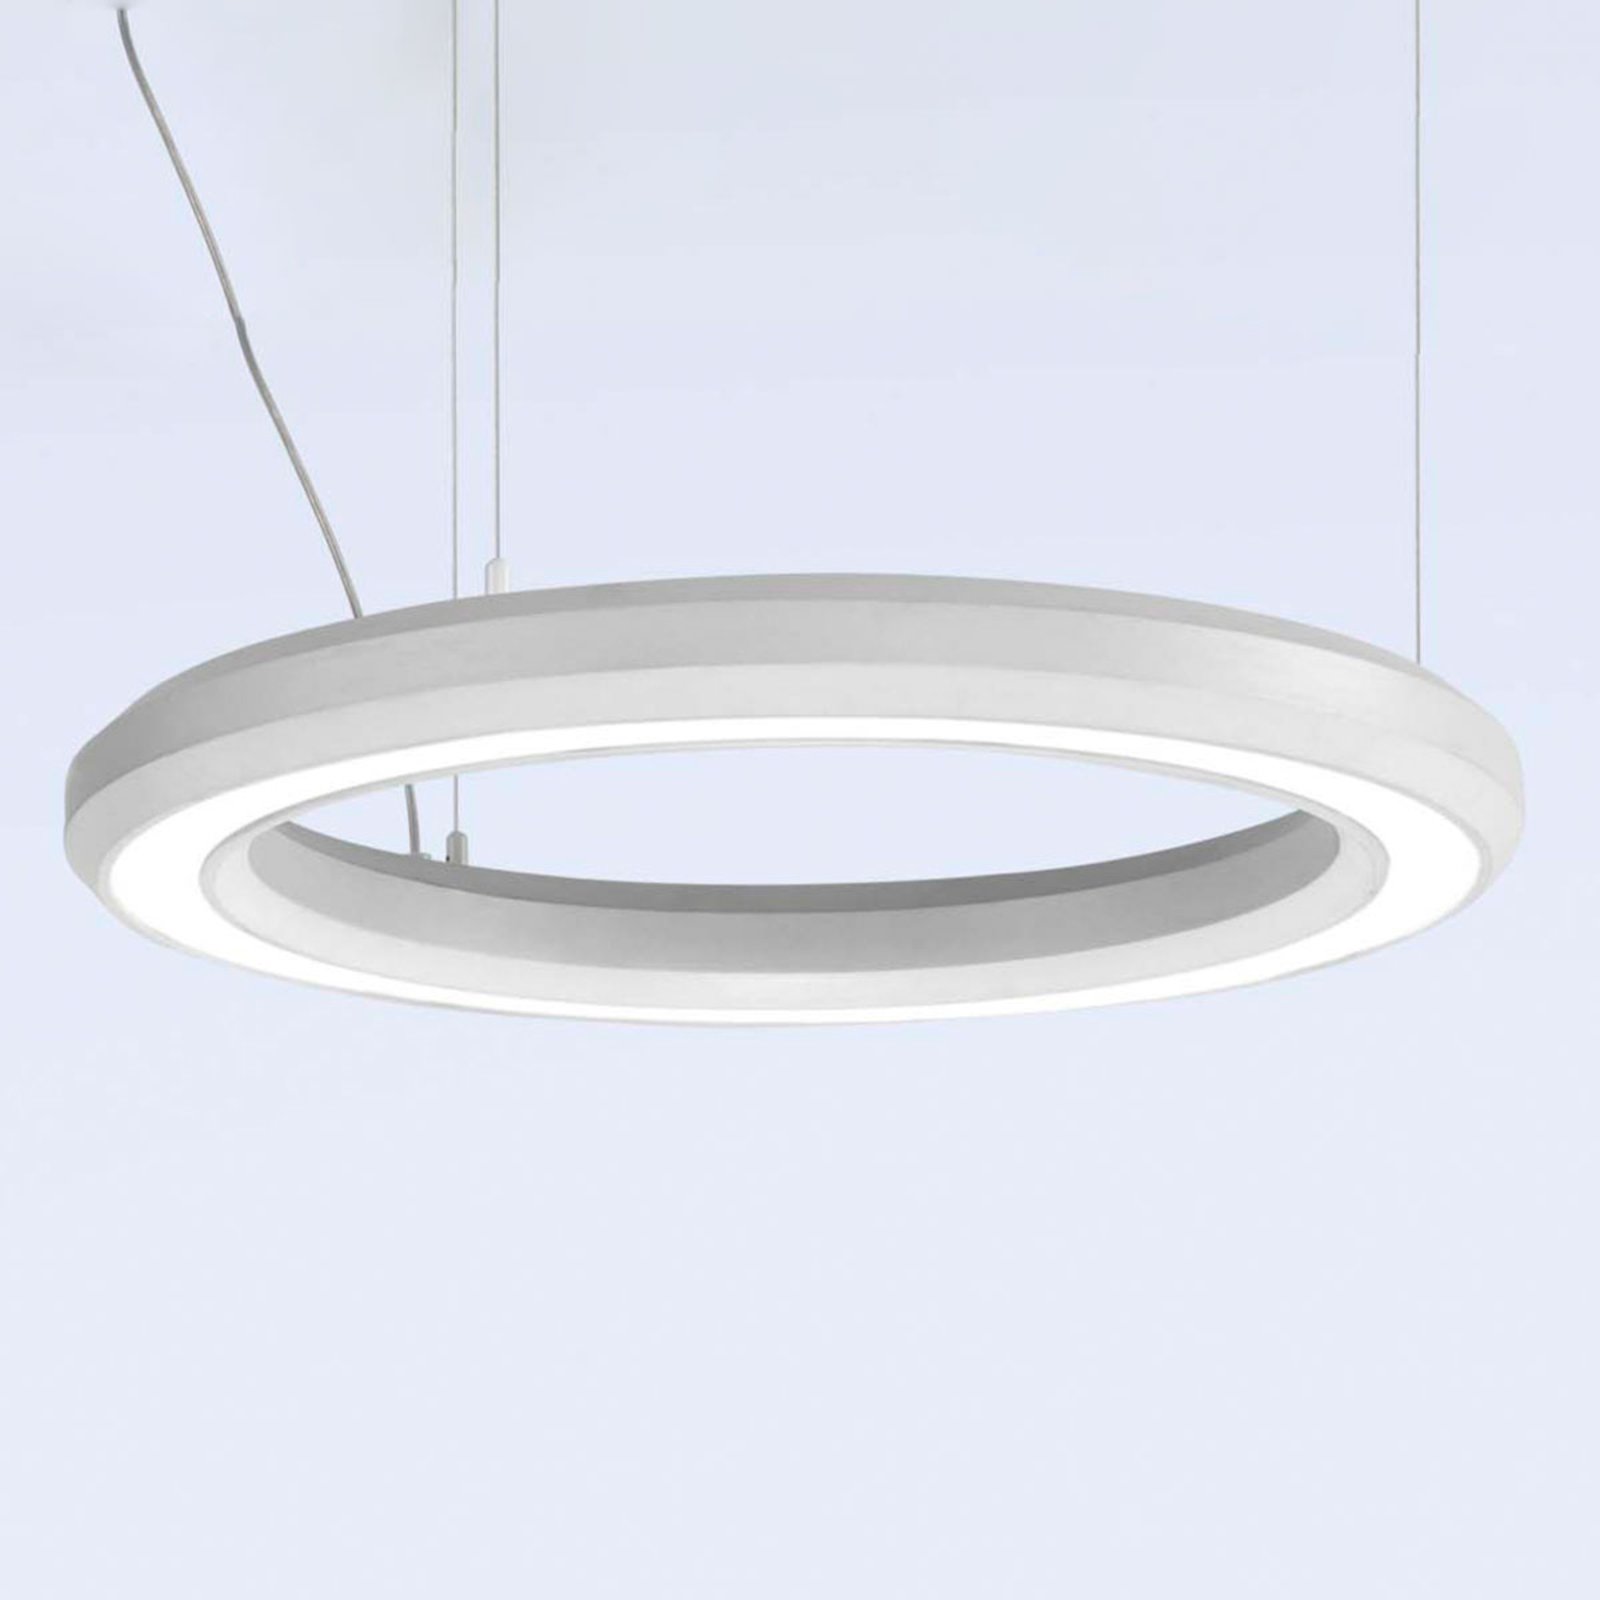 LED-riippuvalaisin Materica pohja Ø 60 cm valkoinen